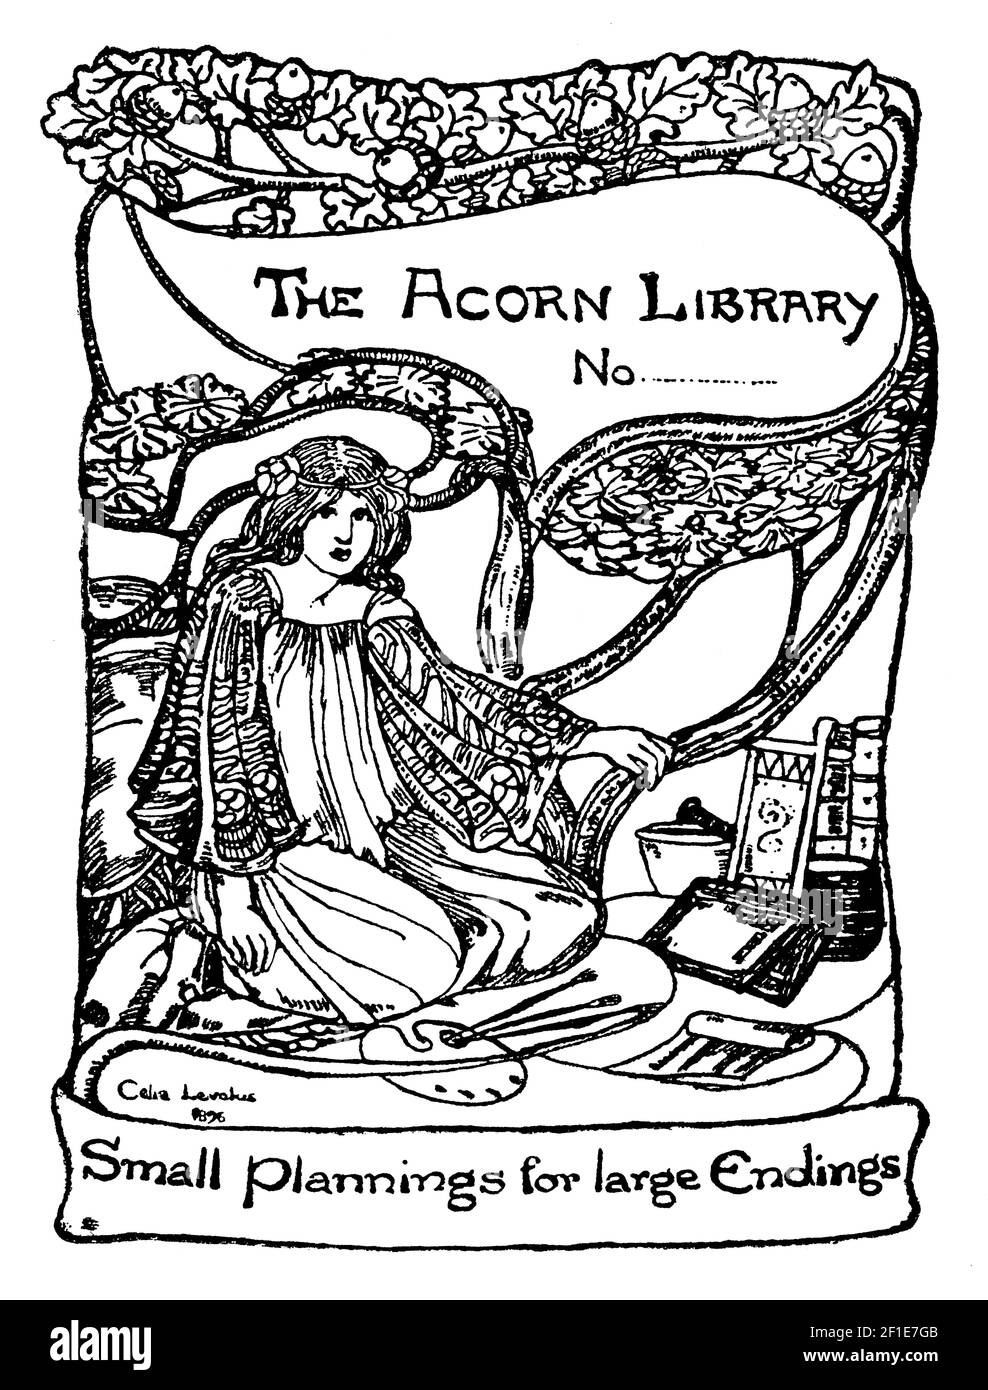 1896 Bibliothèque femme artiste conçue pour la bibliothèque Acorn par l'auteur, le poète et l'illustrateur Celia Levetus Banque D'Images